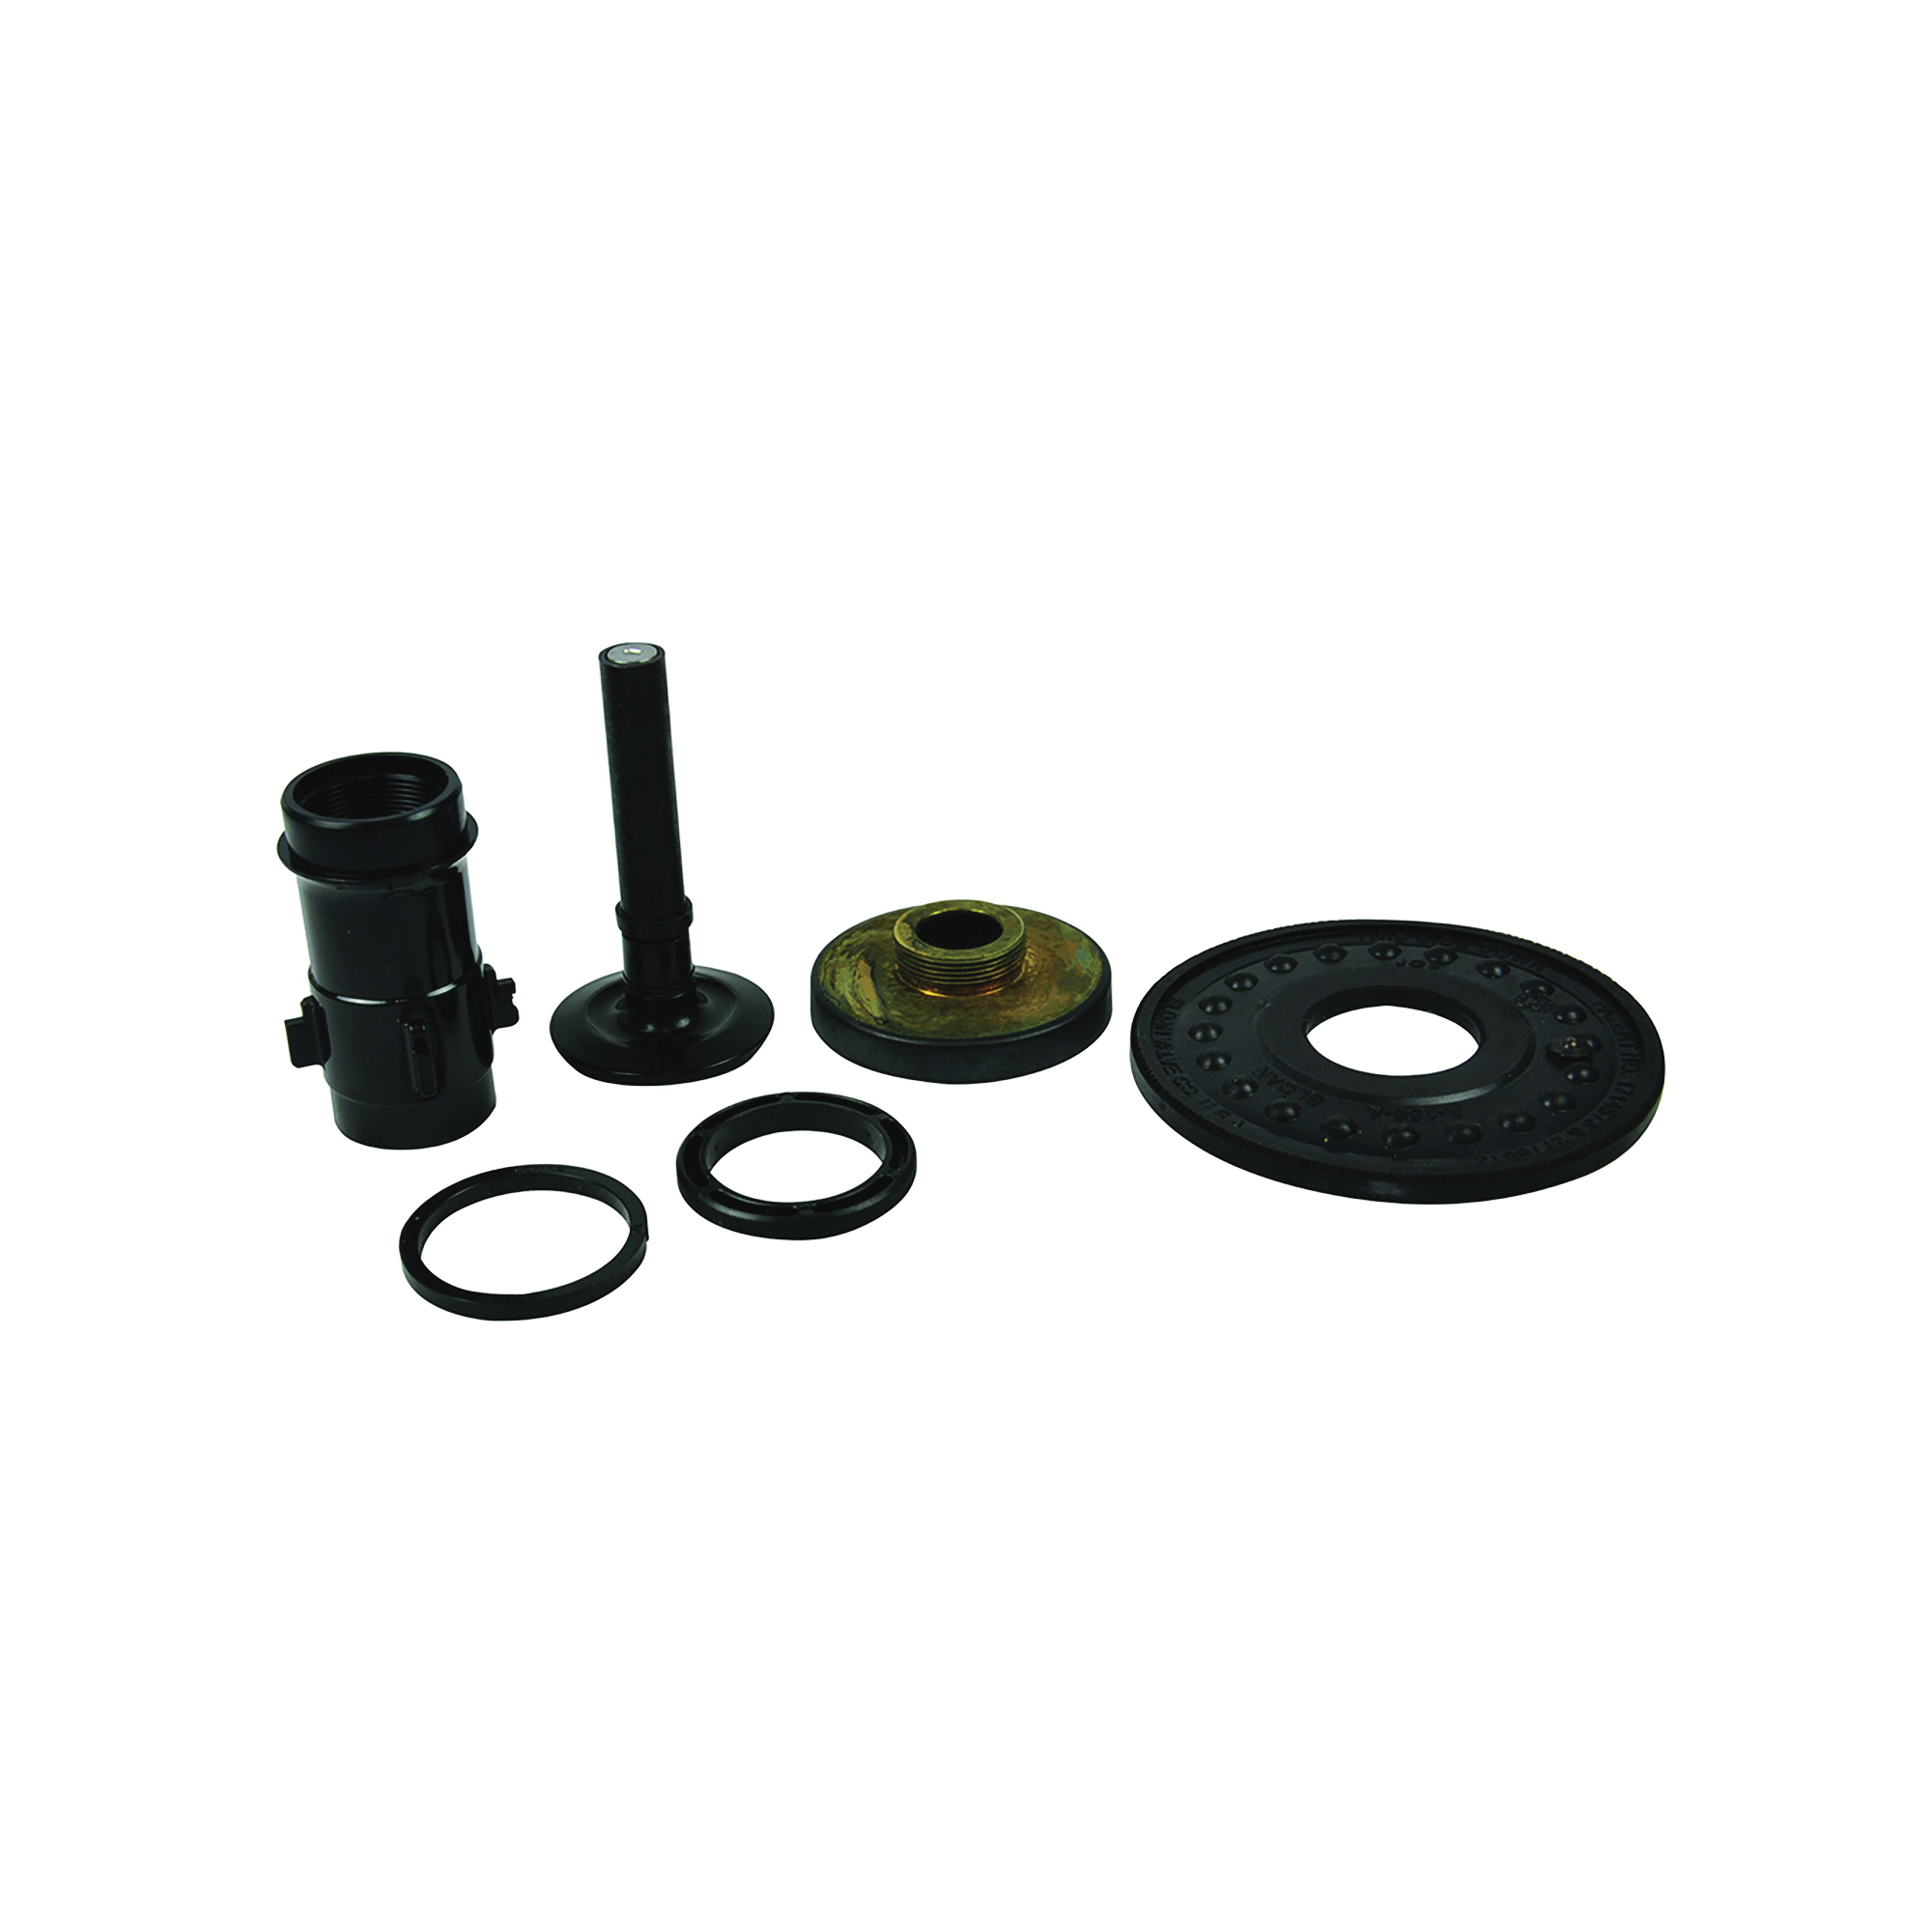 37059 Urinal Repair Kit, Plastic/Rubber, Black, For: Regal 1.5 gpf Urinal Flushometers